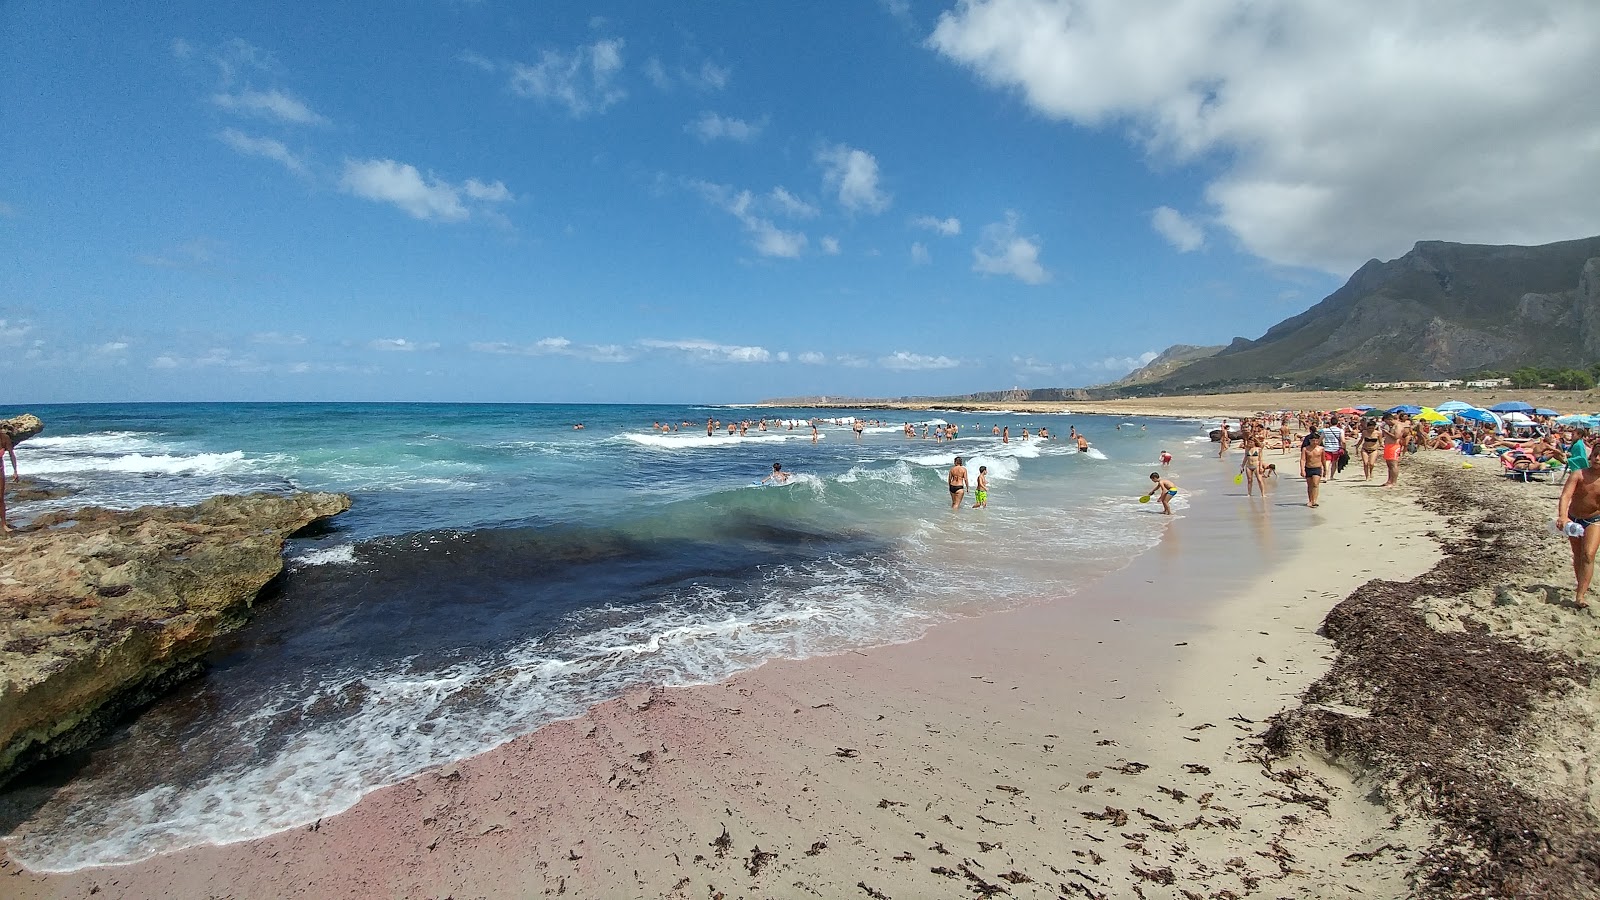 Màcari Plajı'in fotoğrafı parlak kum yüzey ile